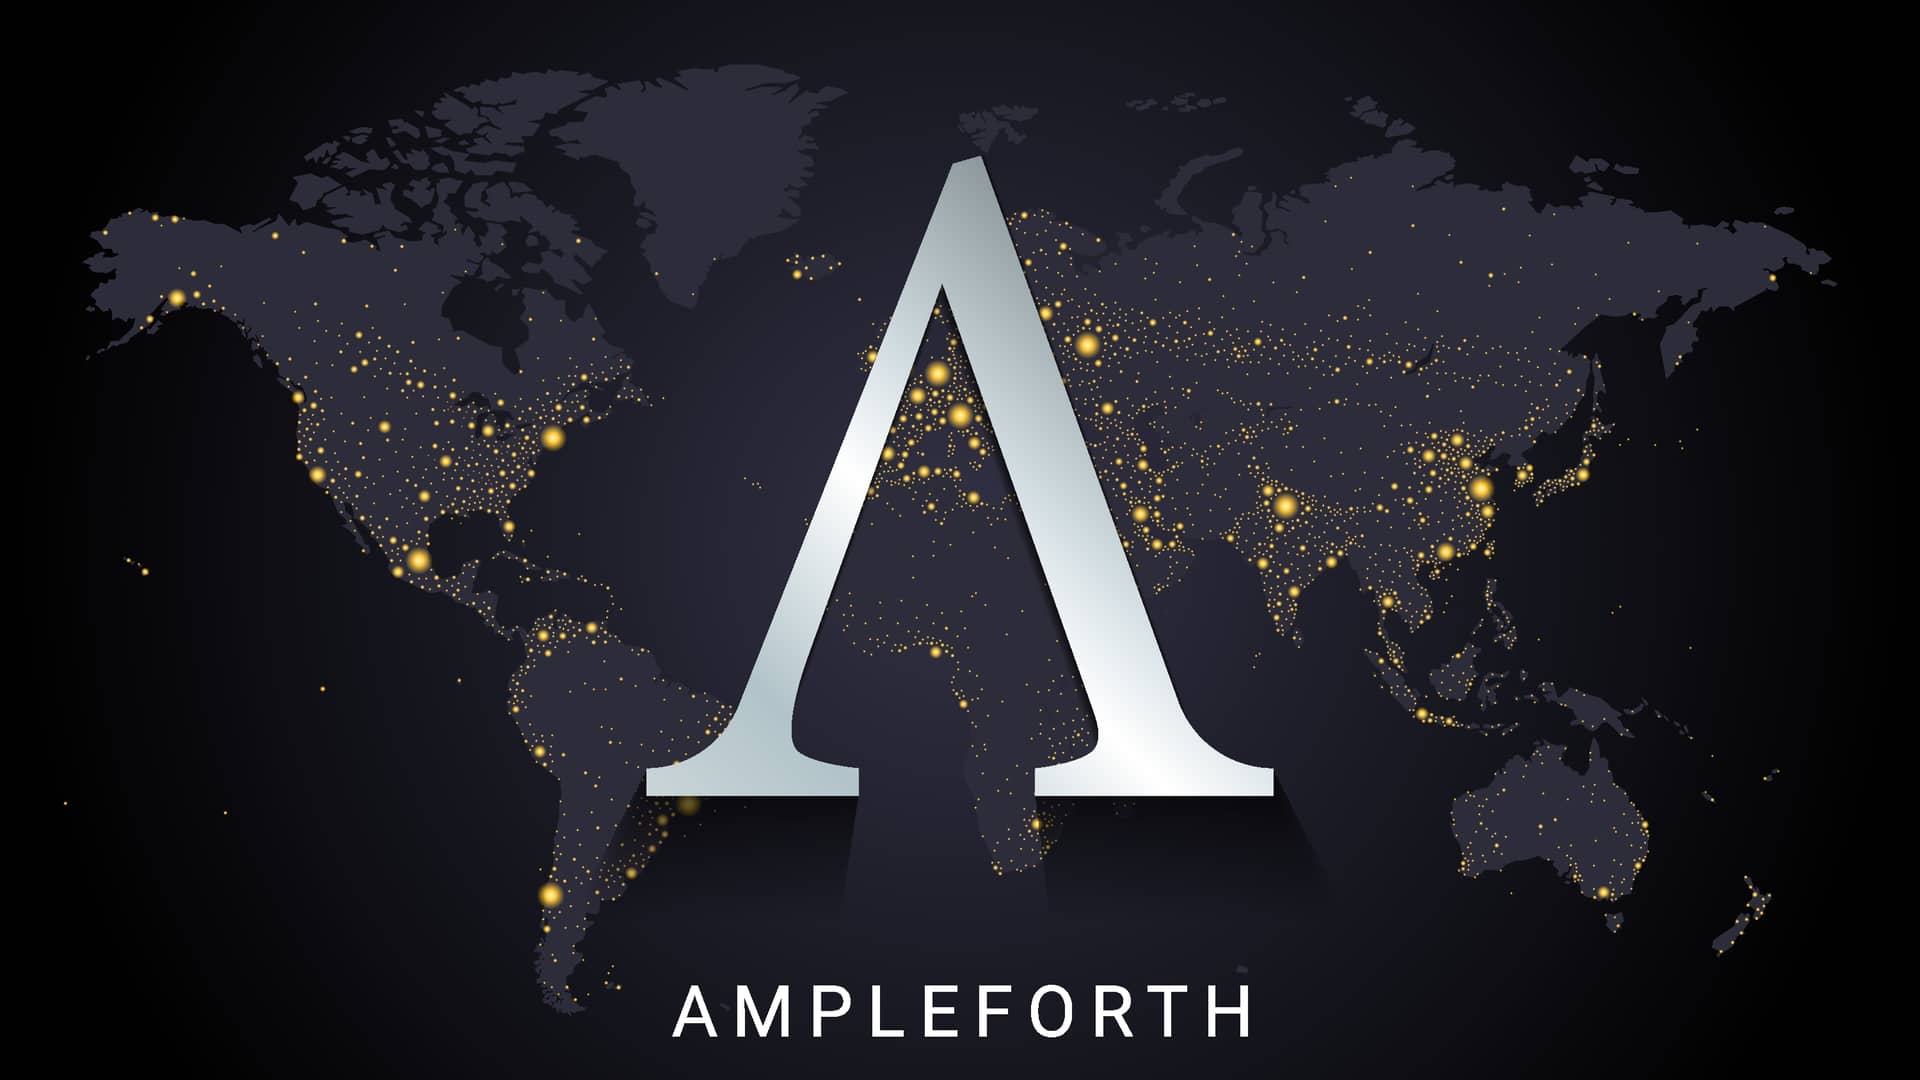 logotipo de las criptomonedas ampleforth governance token sobre un mapa del mundo oscuro iluminado por las luces nocturnas